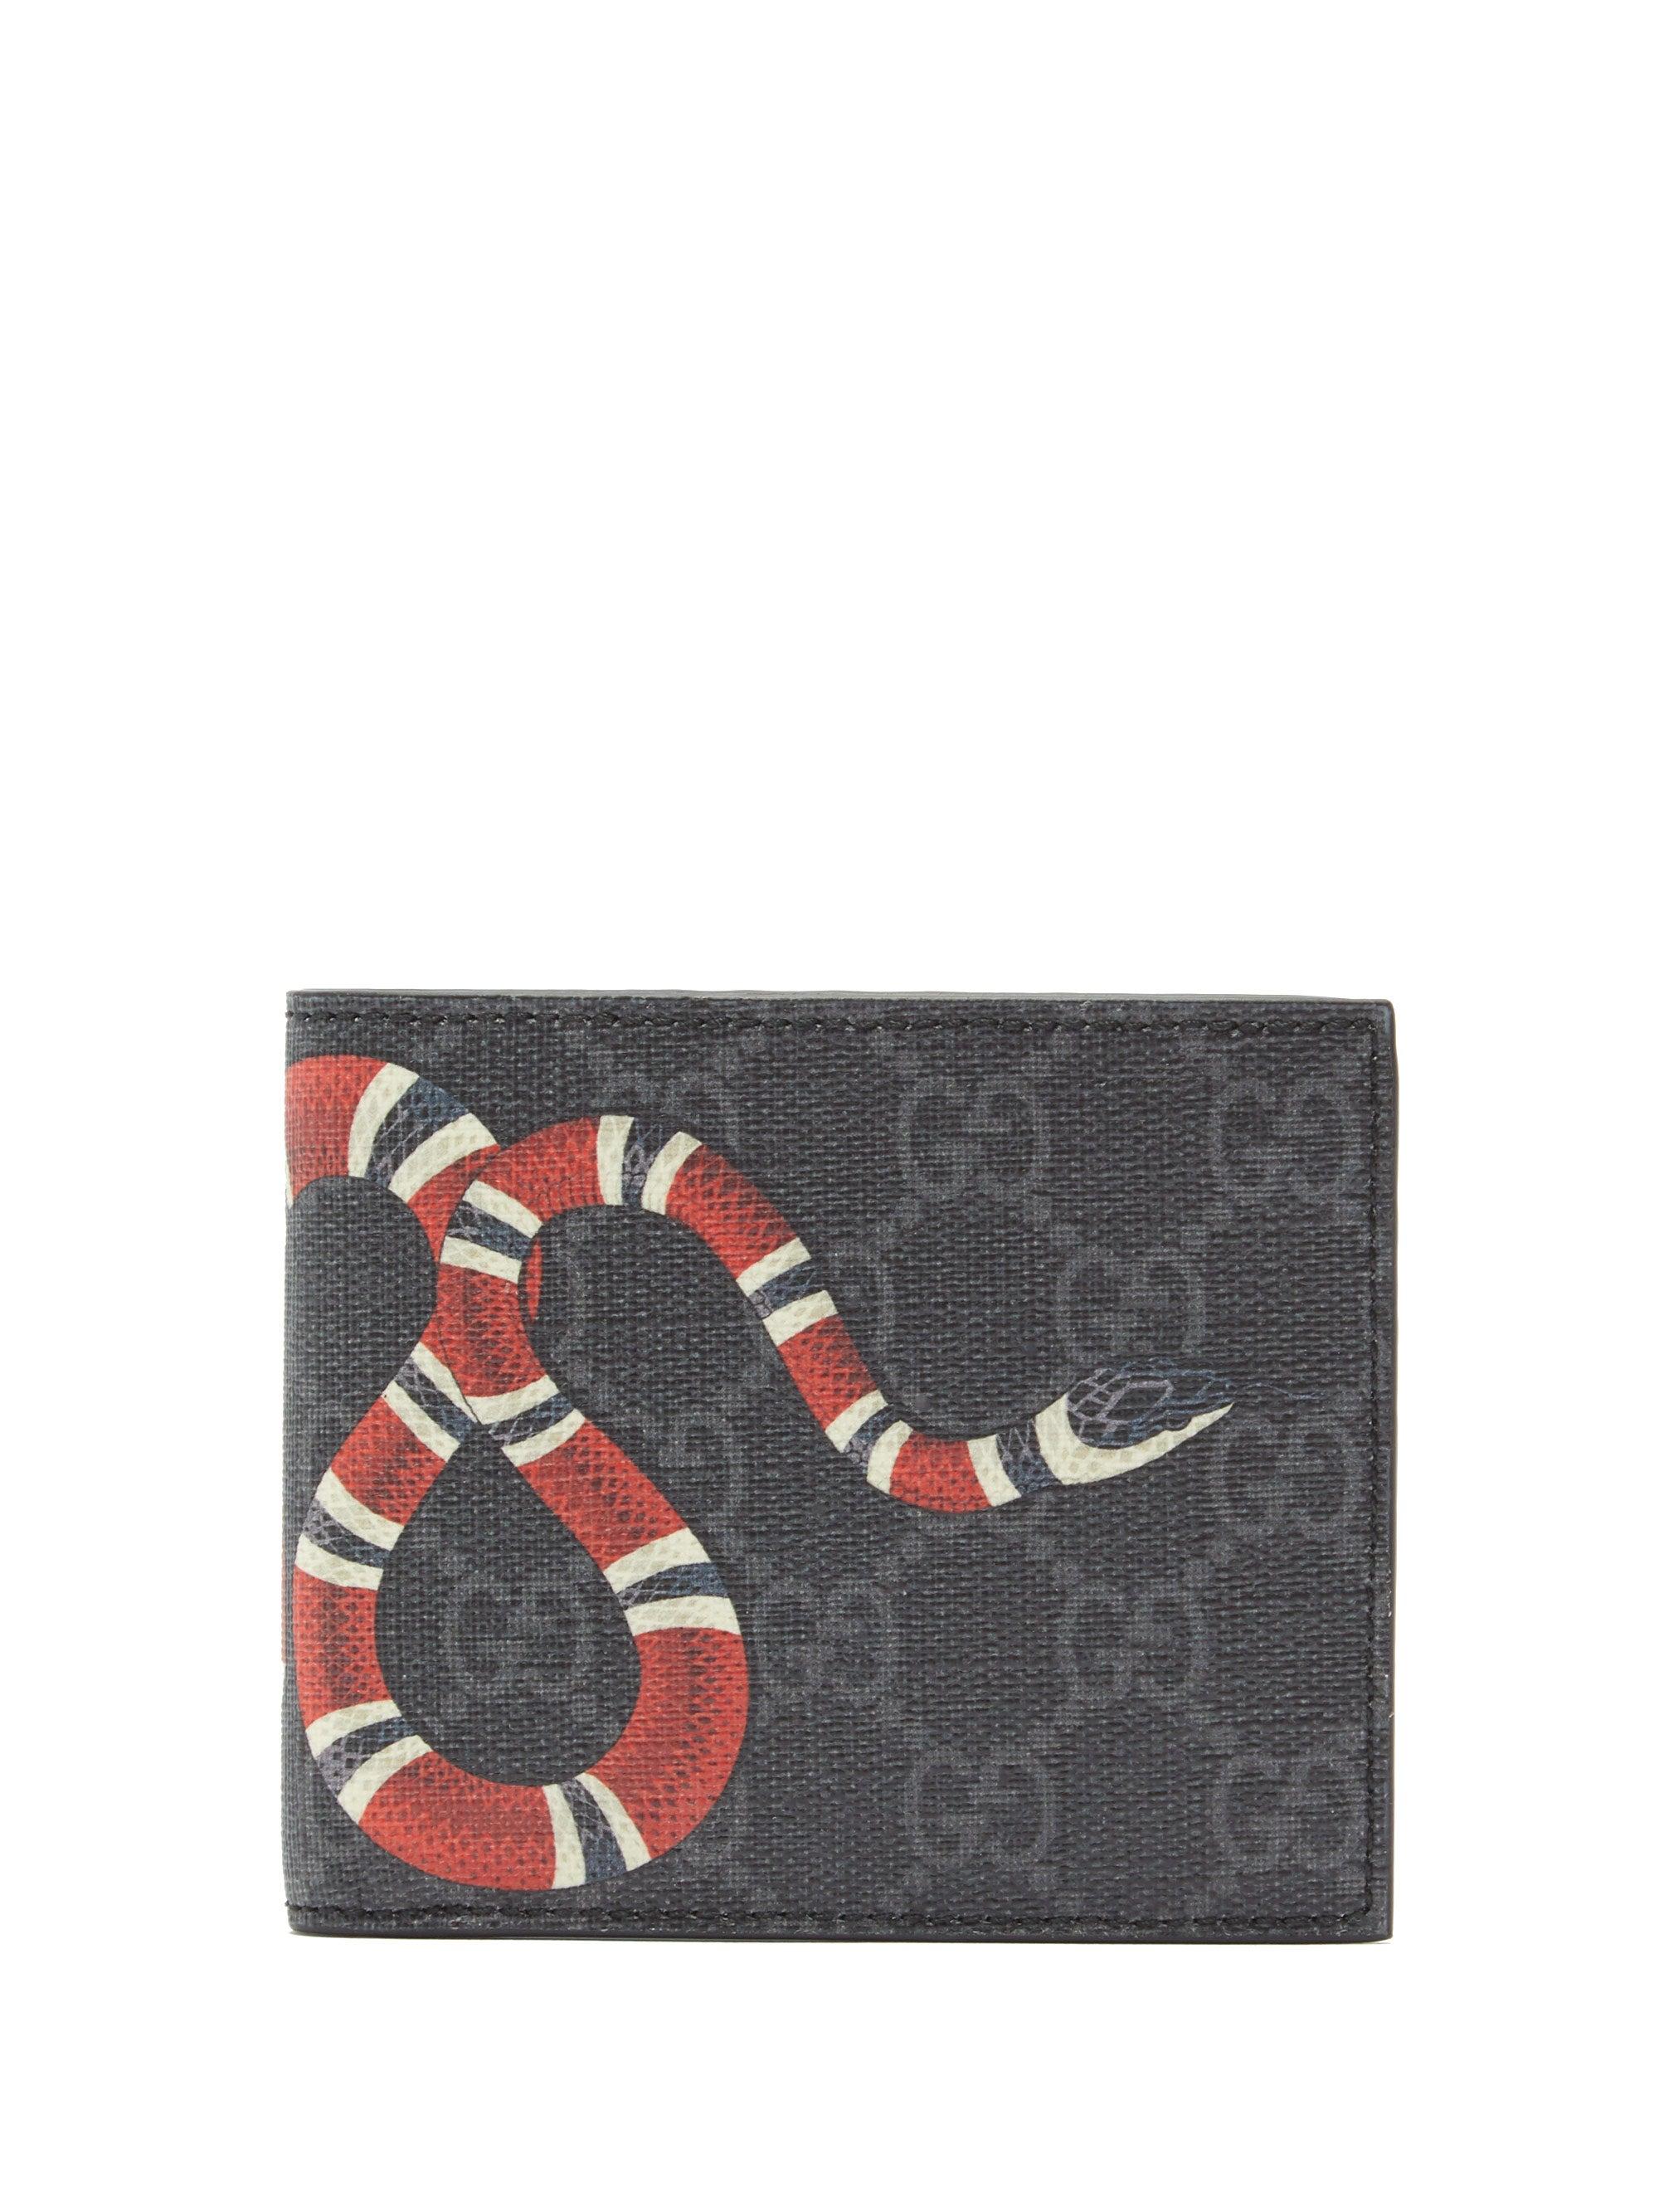 snake gucci card holder Big sale - OFF 67%